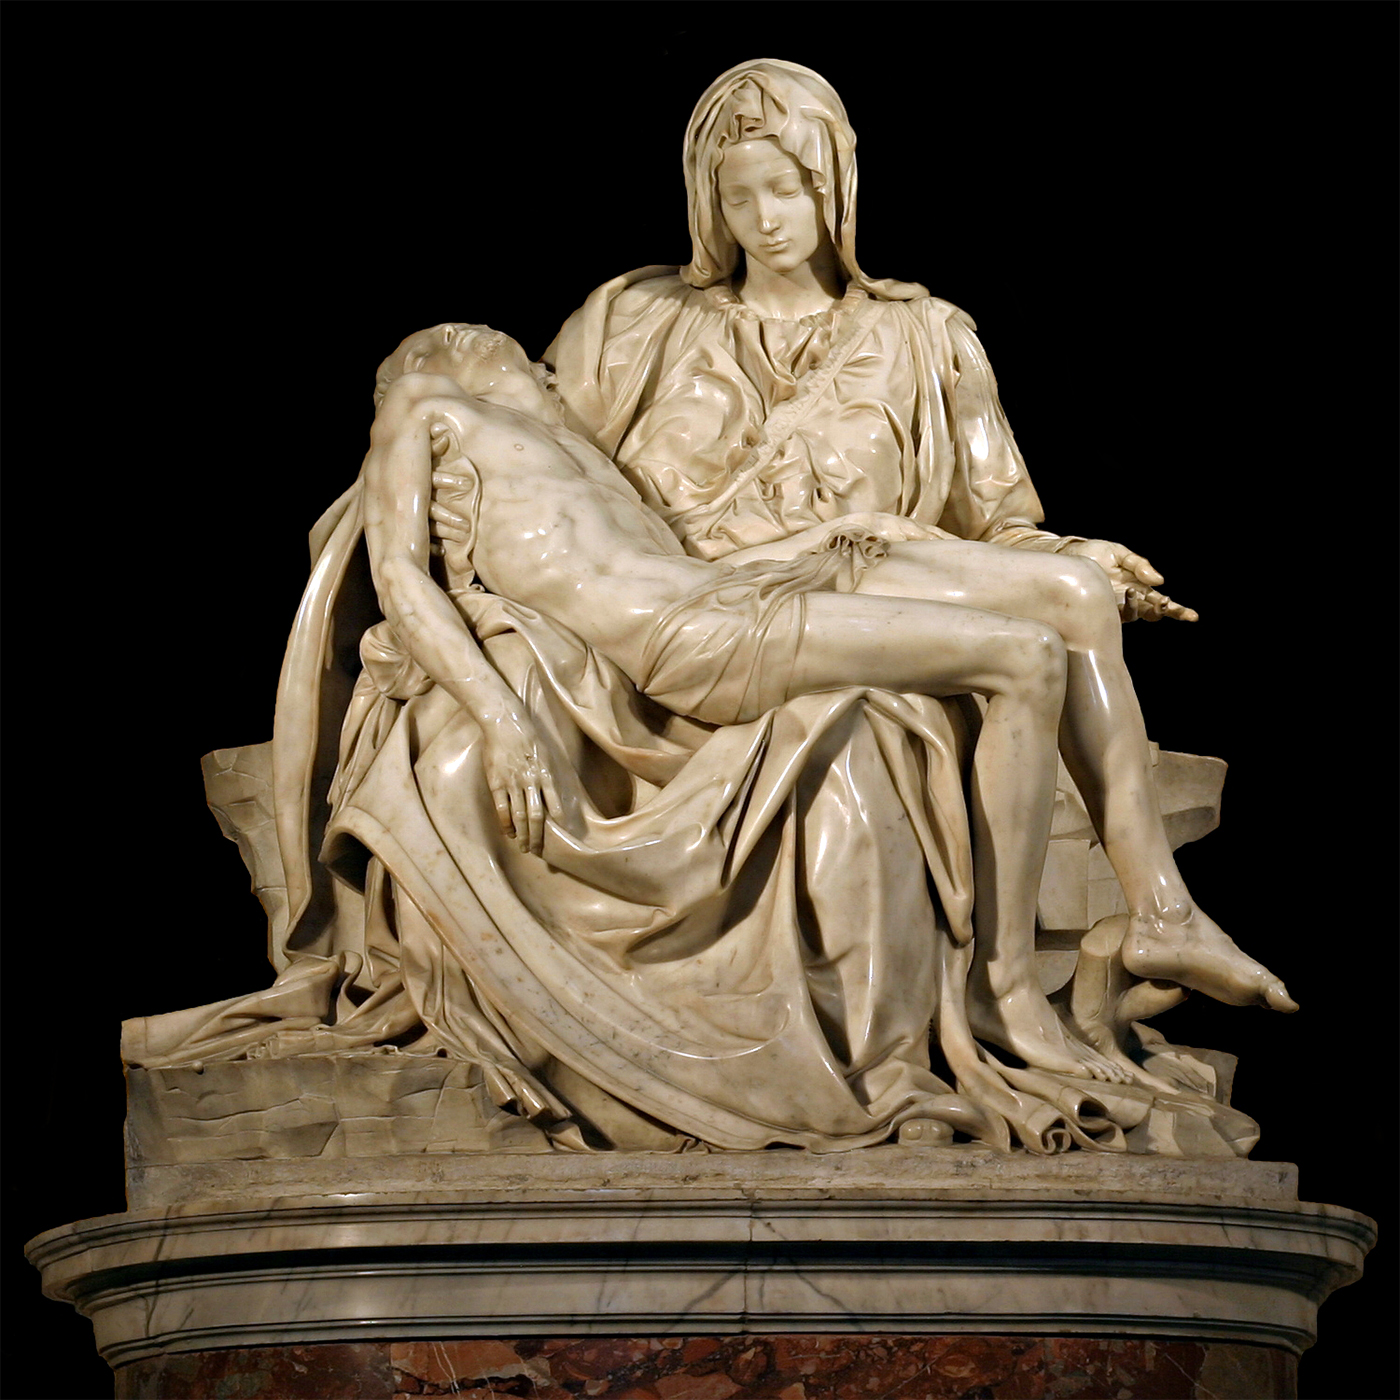 La Pietà di Michelangelo Buonarroti in tutto il suo splendore - Wikimedia.org , CC BY 2.5